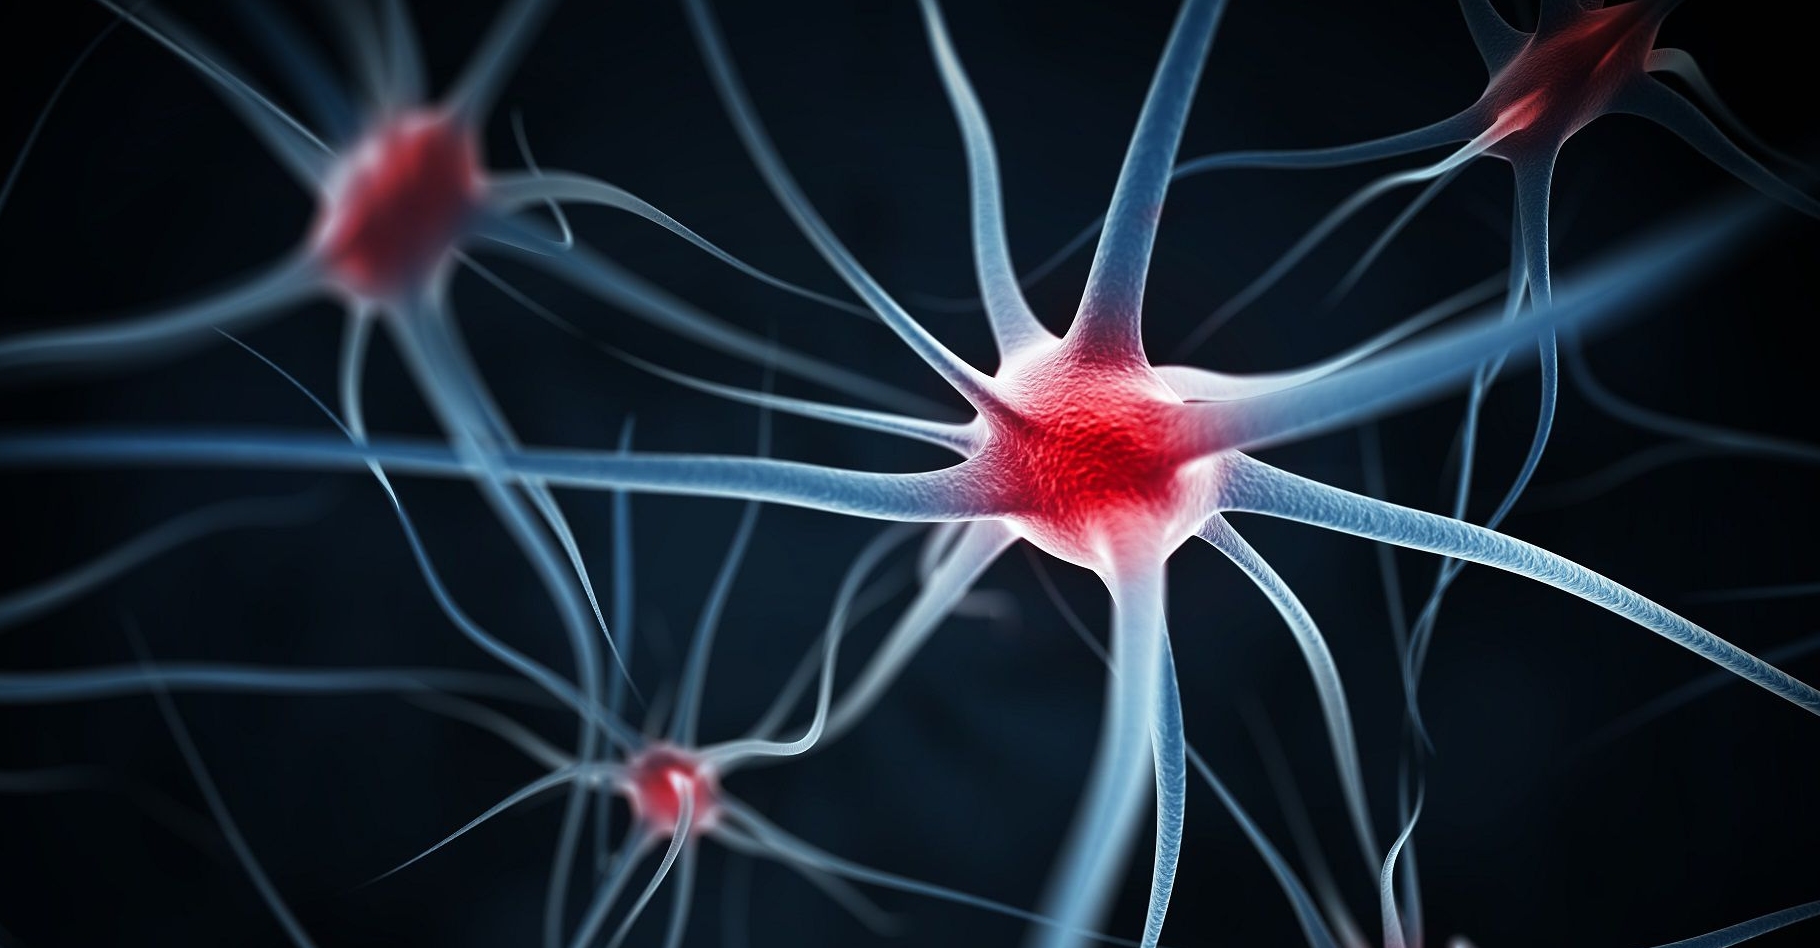 Chez les vertébrés, les prolongements des neurones par lesquels part l'influx nerveux (les axones) sont protégés par une gaine de myéline, une substance composée de protéines et de lipides qui est secrétée par des cellules entourant la fibre. La myéline facilite le passage de l'influx nerveux et en augmente la vitesse de propagation. Des maladies peuvent l'altérer. C'est le cas de la sclérose en plaques qui touche les fibres du système nerveux central (cerveau et moelle épinière). © Leigh Prather, Shutterstock